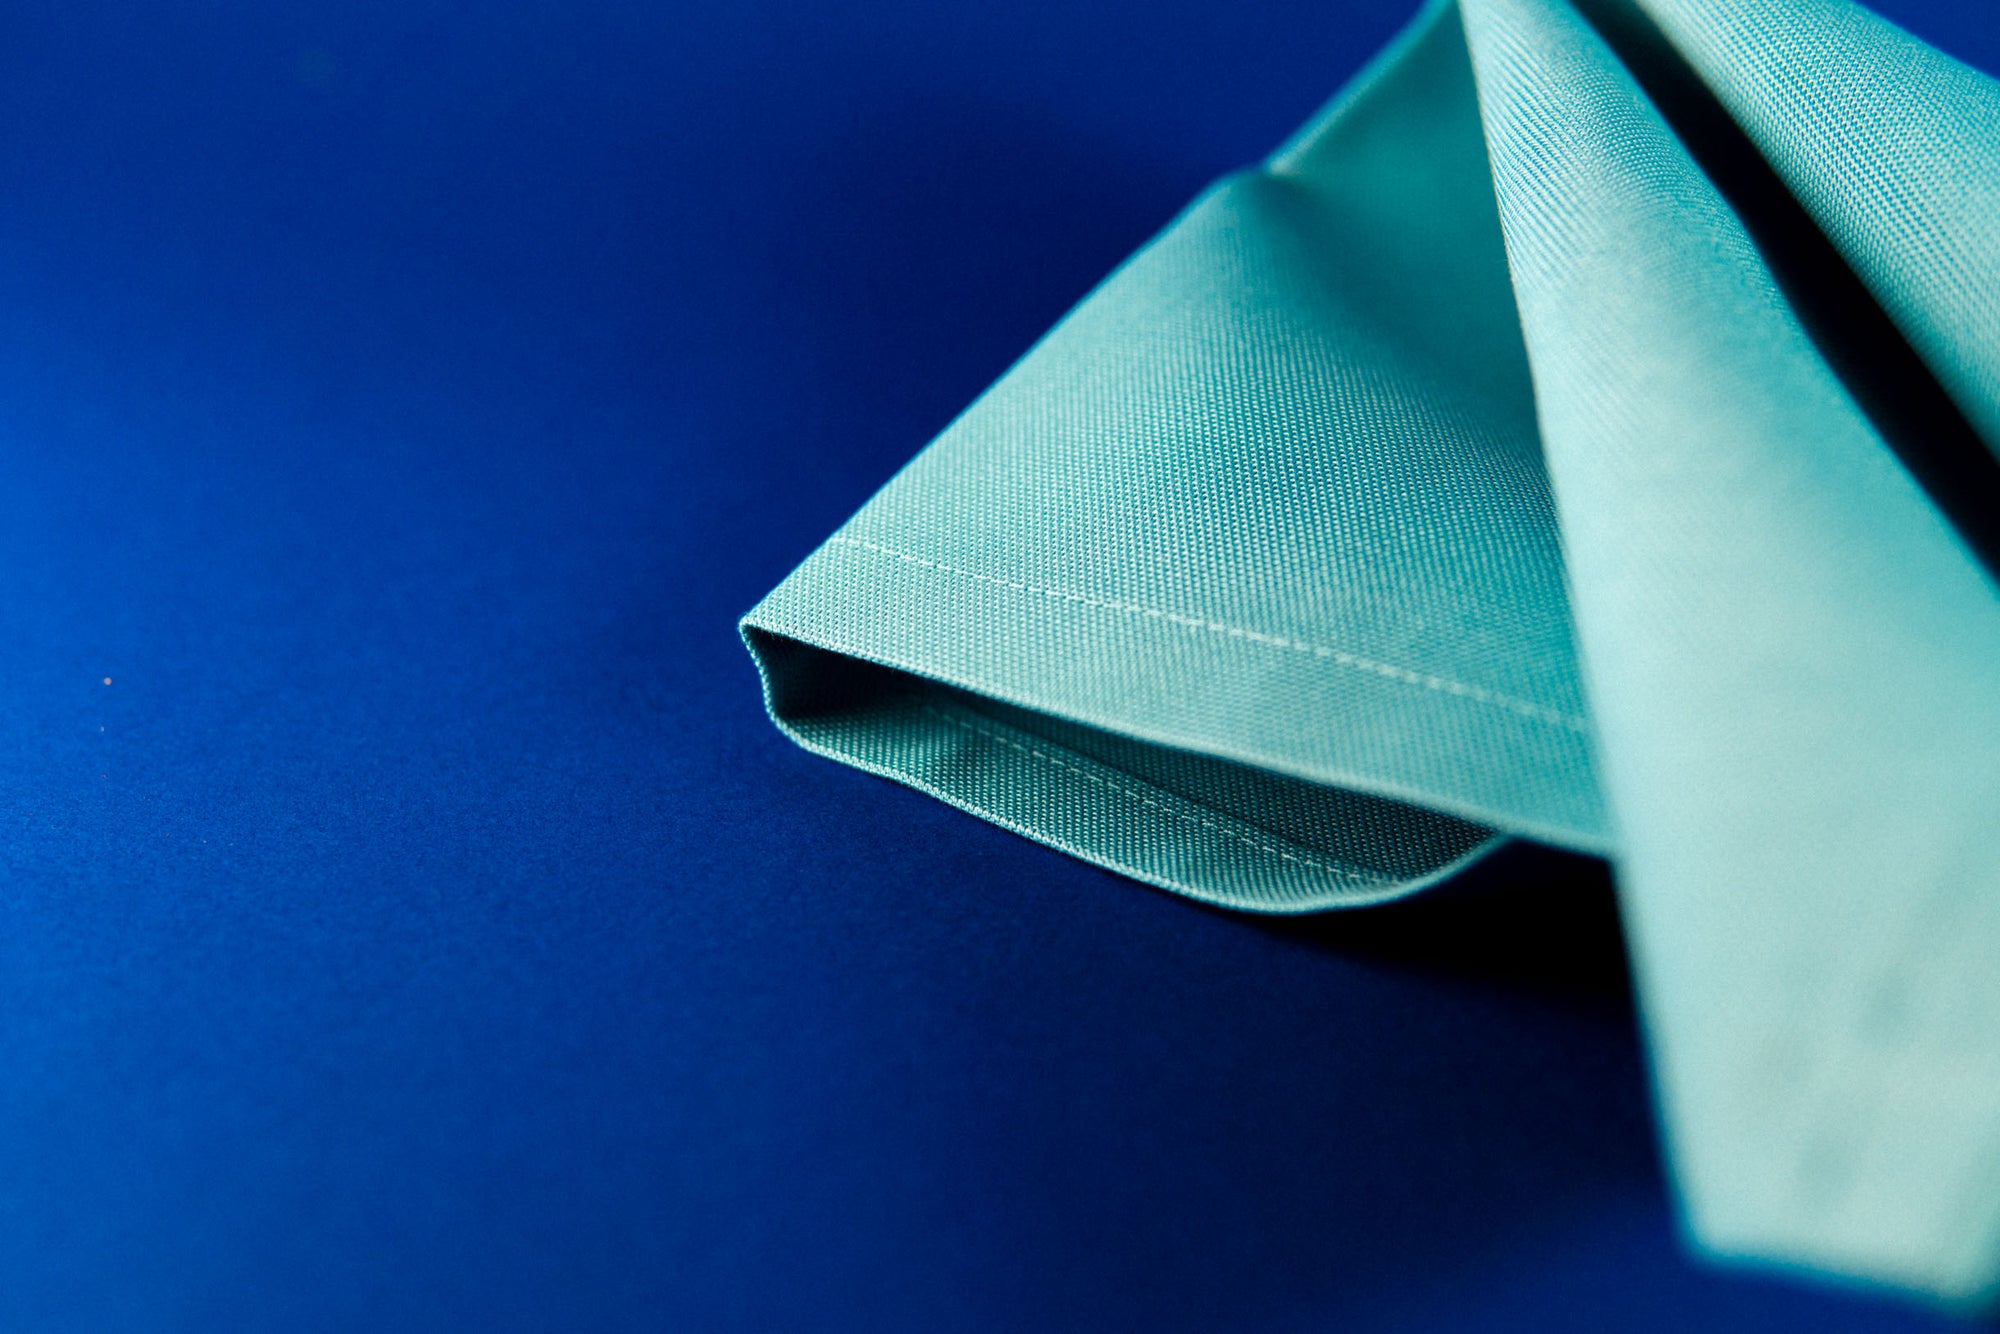 4 tovaglioli colorati | azzurro Dorotea